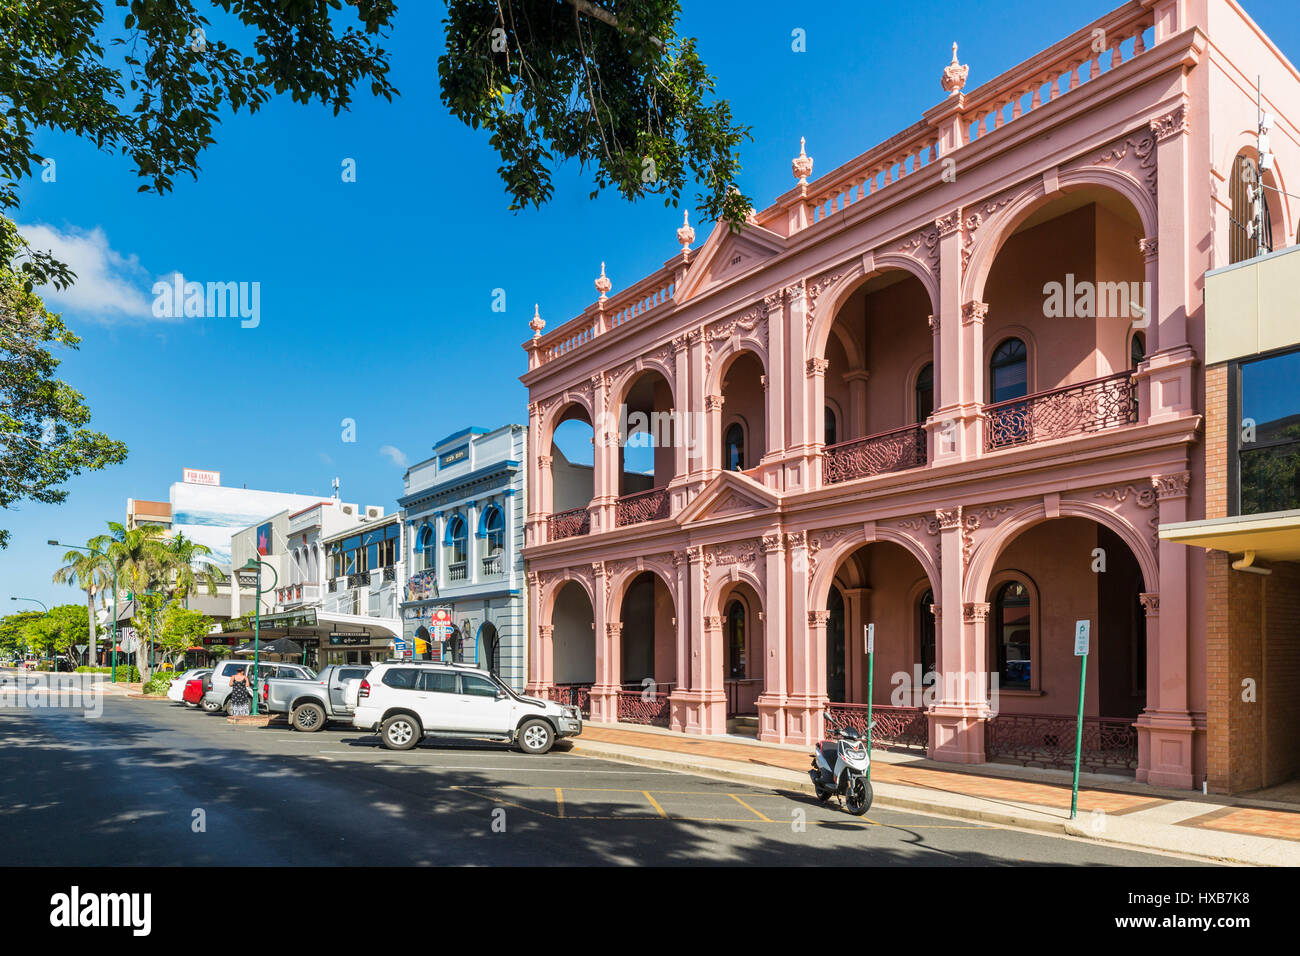 El edificio de la Escuela de Bellas Artes de Bundaberg en Bourbong Street. Bundaberg, Queensland, Australia Foto de stock